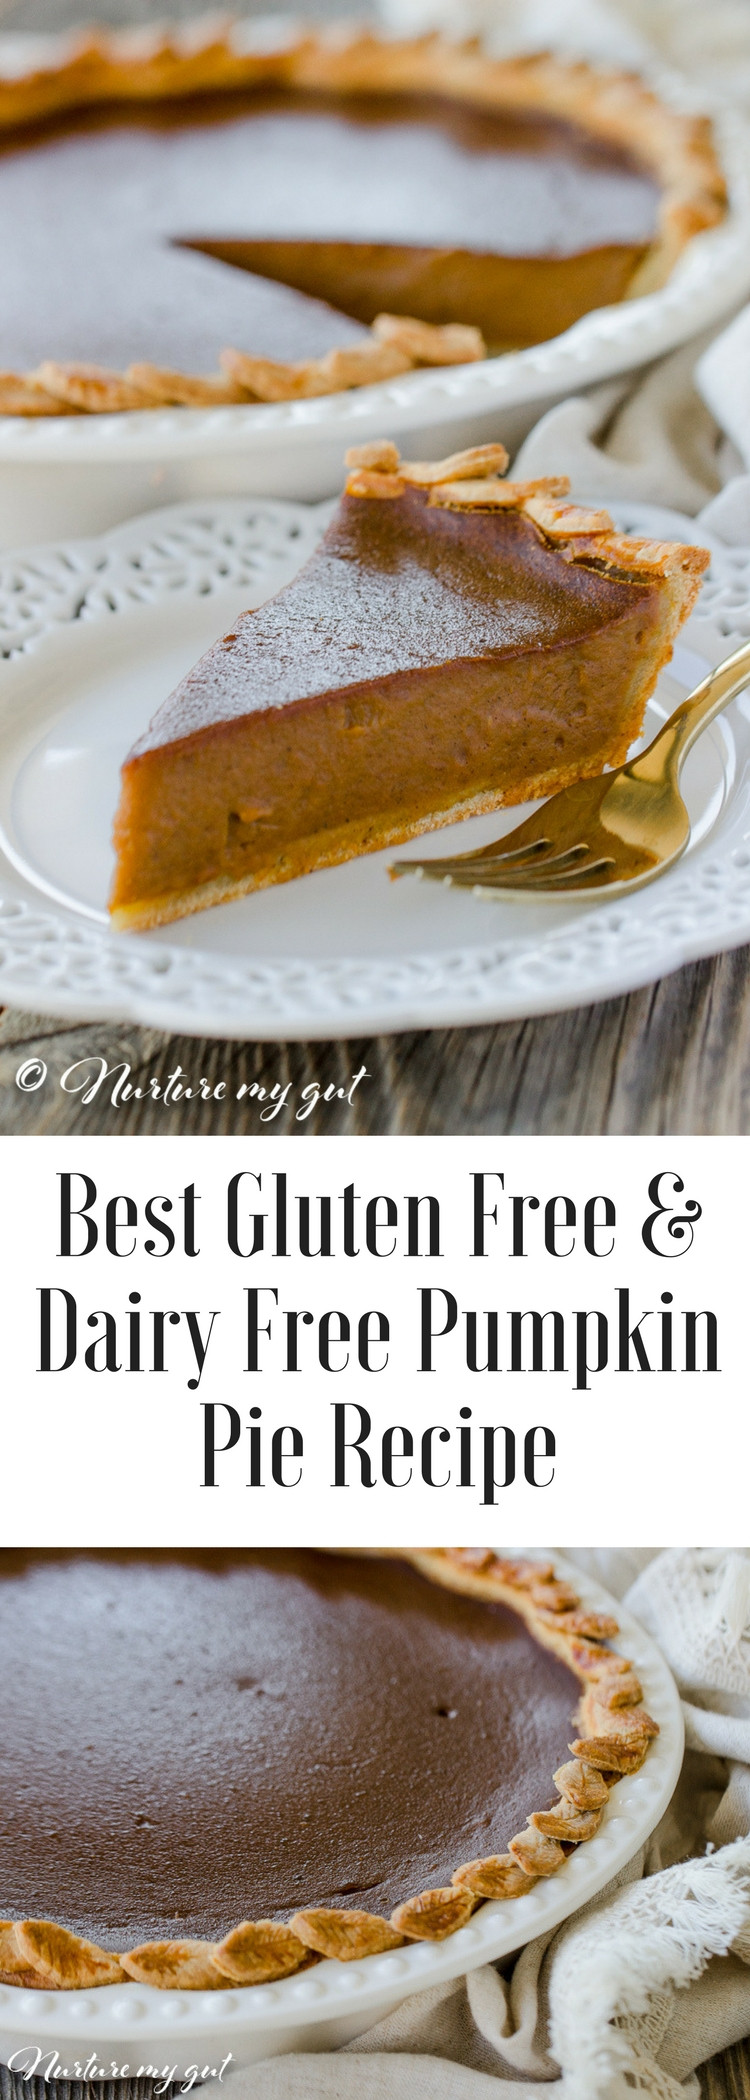 Pumpkin Pie Dairy Free
 Gluten Free Dairy Free Pumpkin Pie Recipe Best Pie Recipe 